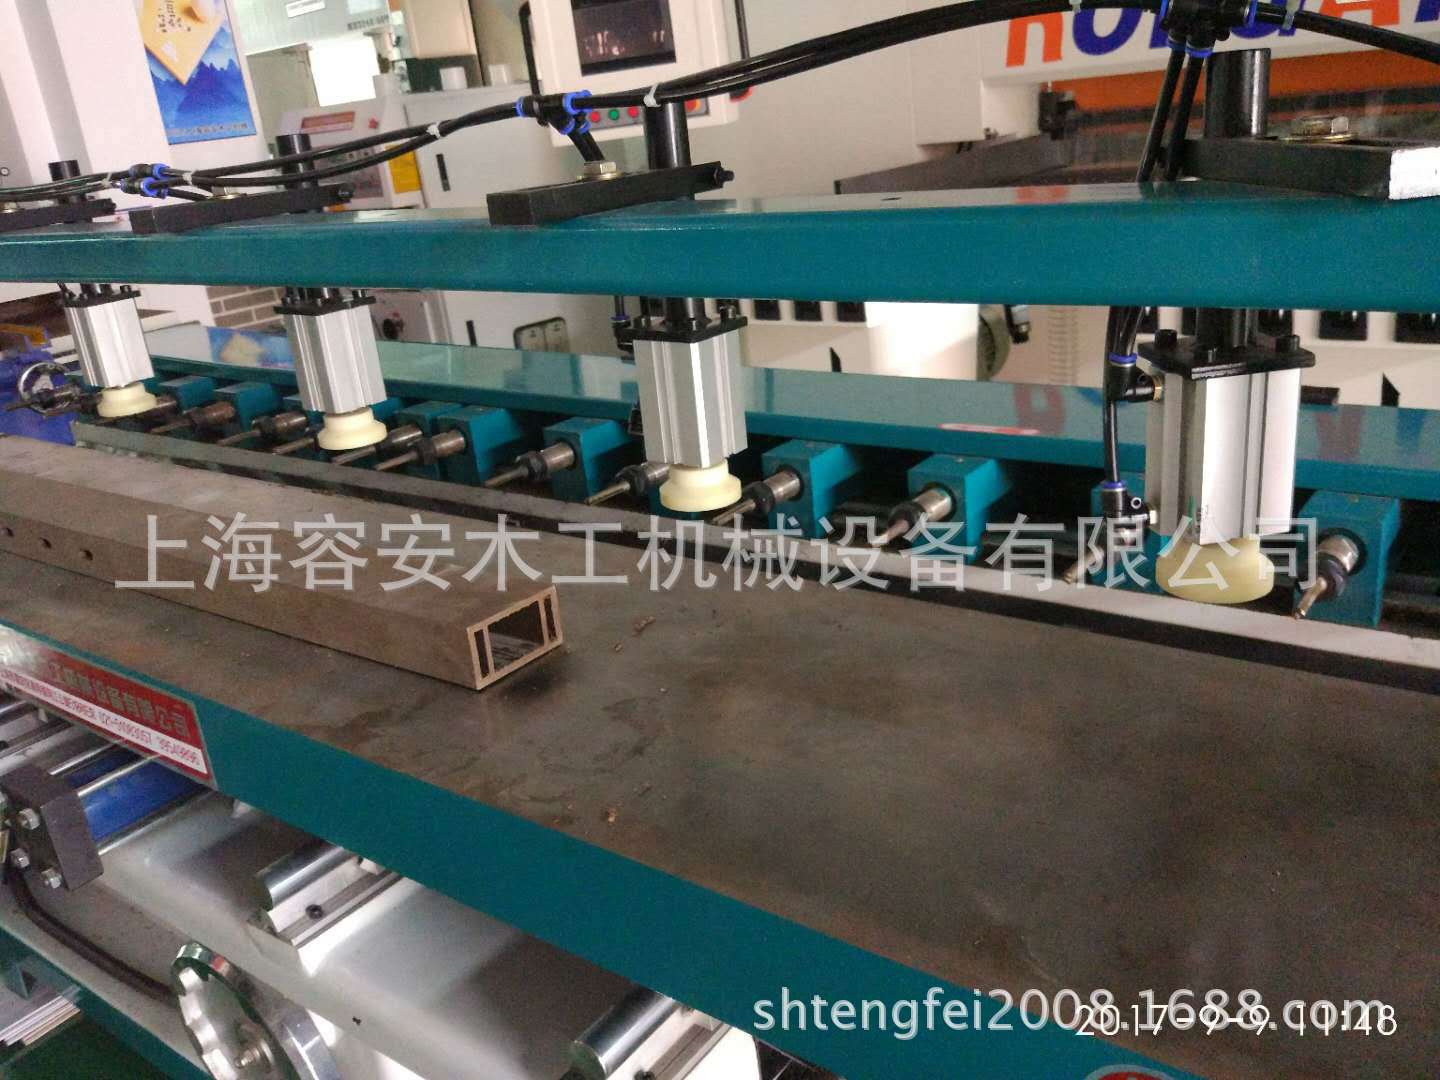 非標定做銑槽機、上海多頭銑槽機、上海定做多頭銑槽機組鉆銑機